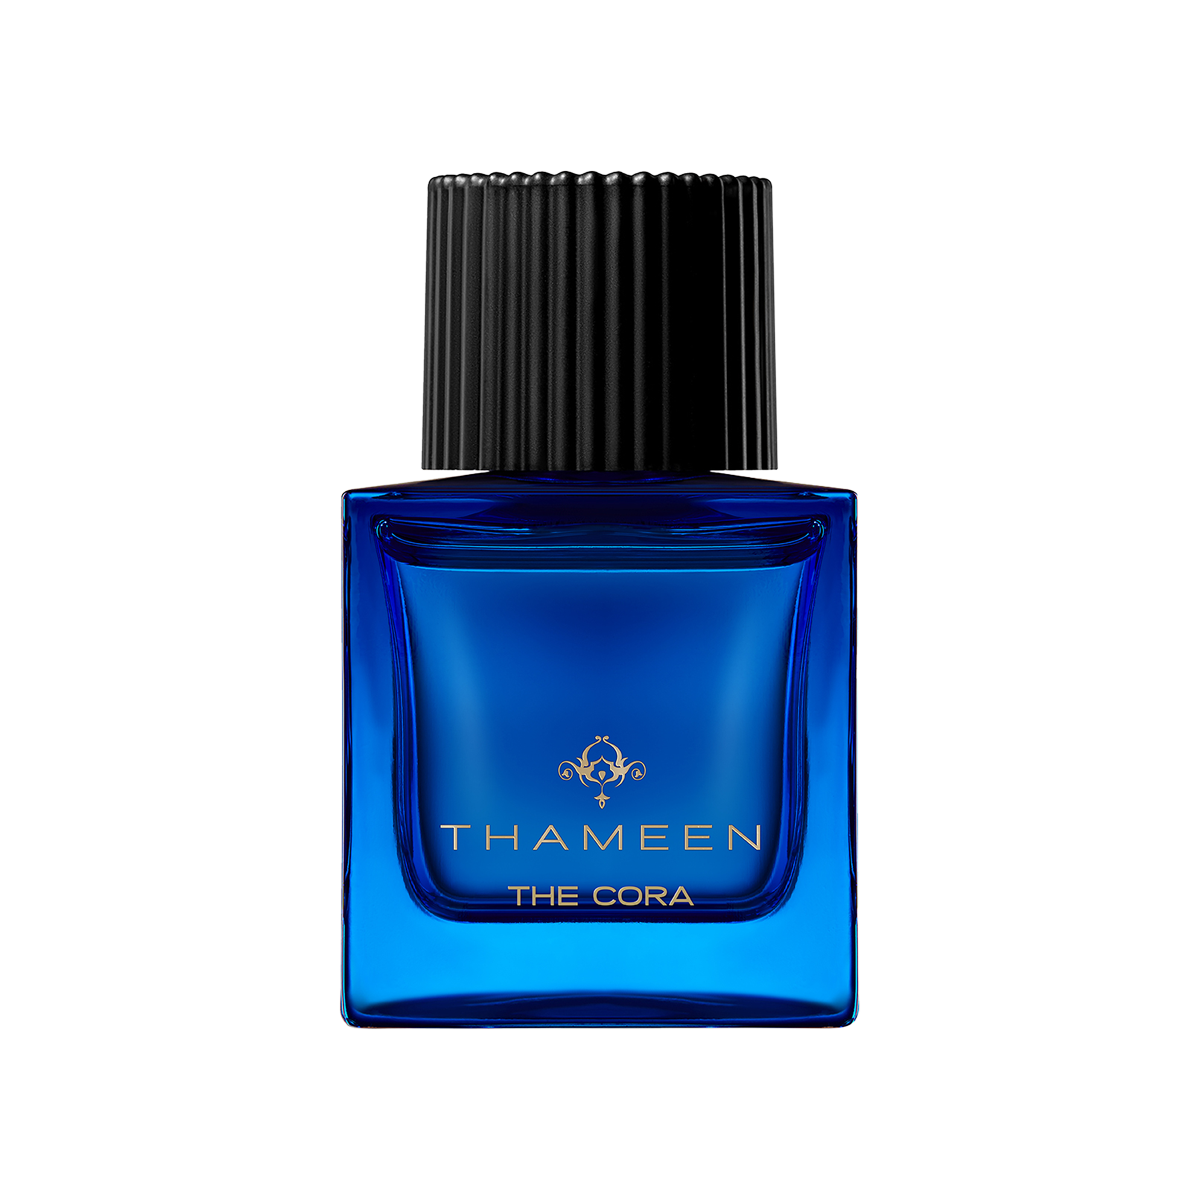 Thameen London - The Cora Eau de Parfum